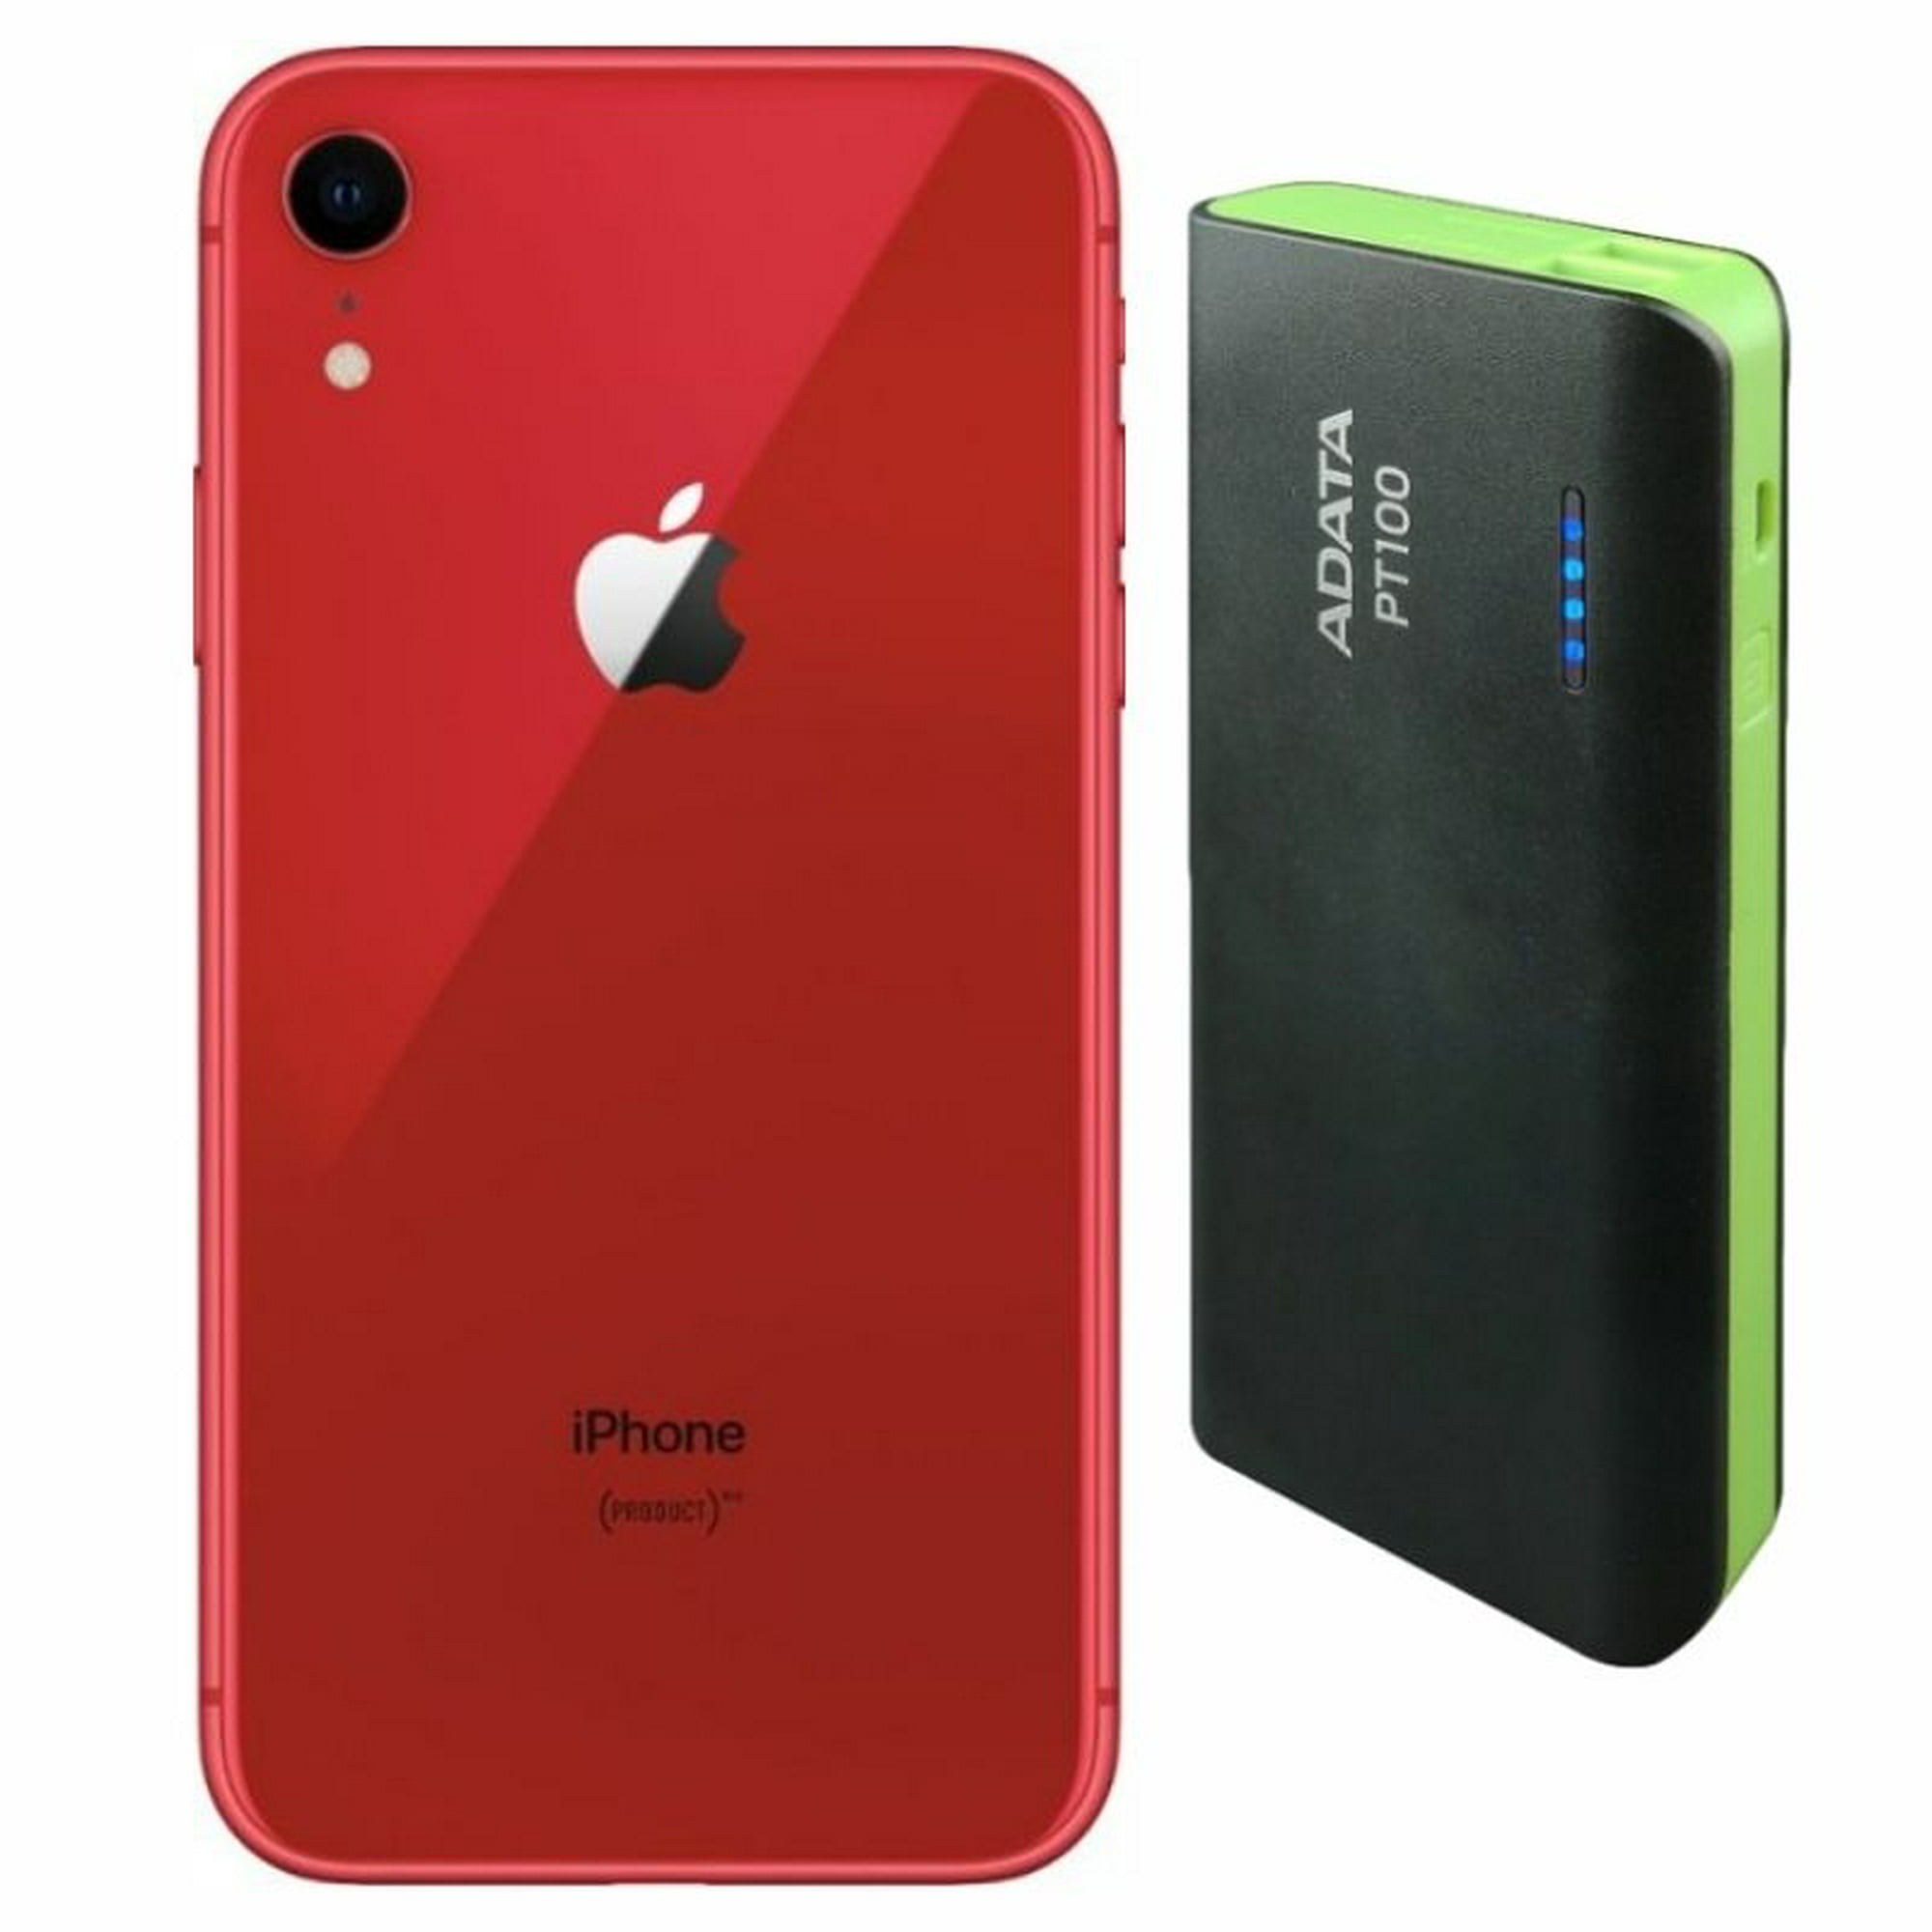 Smartphone iPhone 11 Reacondicionado 64gb Negro + Estabilizador Apple iPhone  MWKY2LL/A